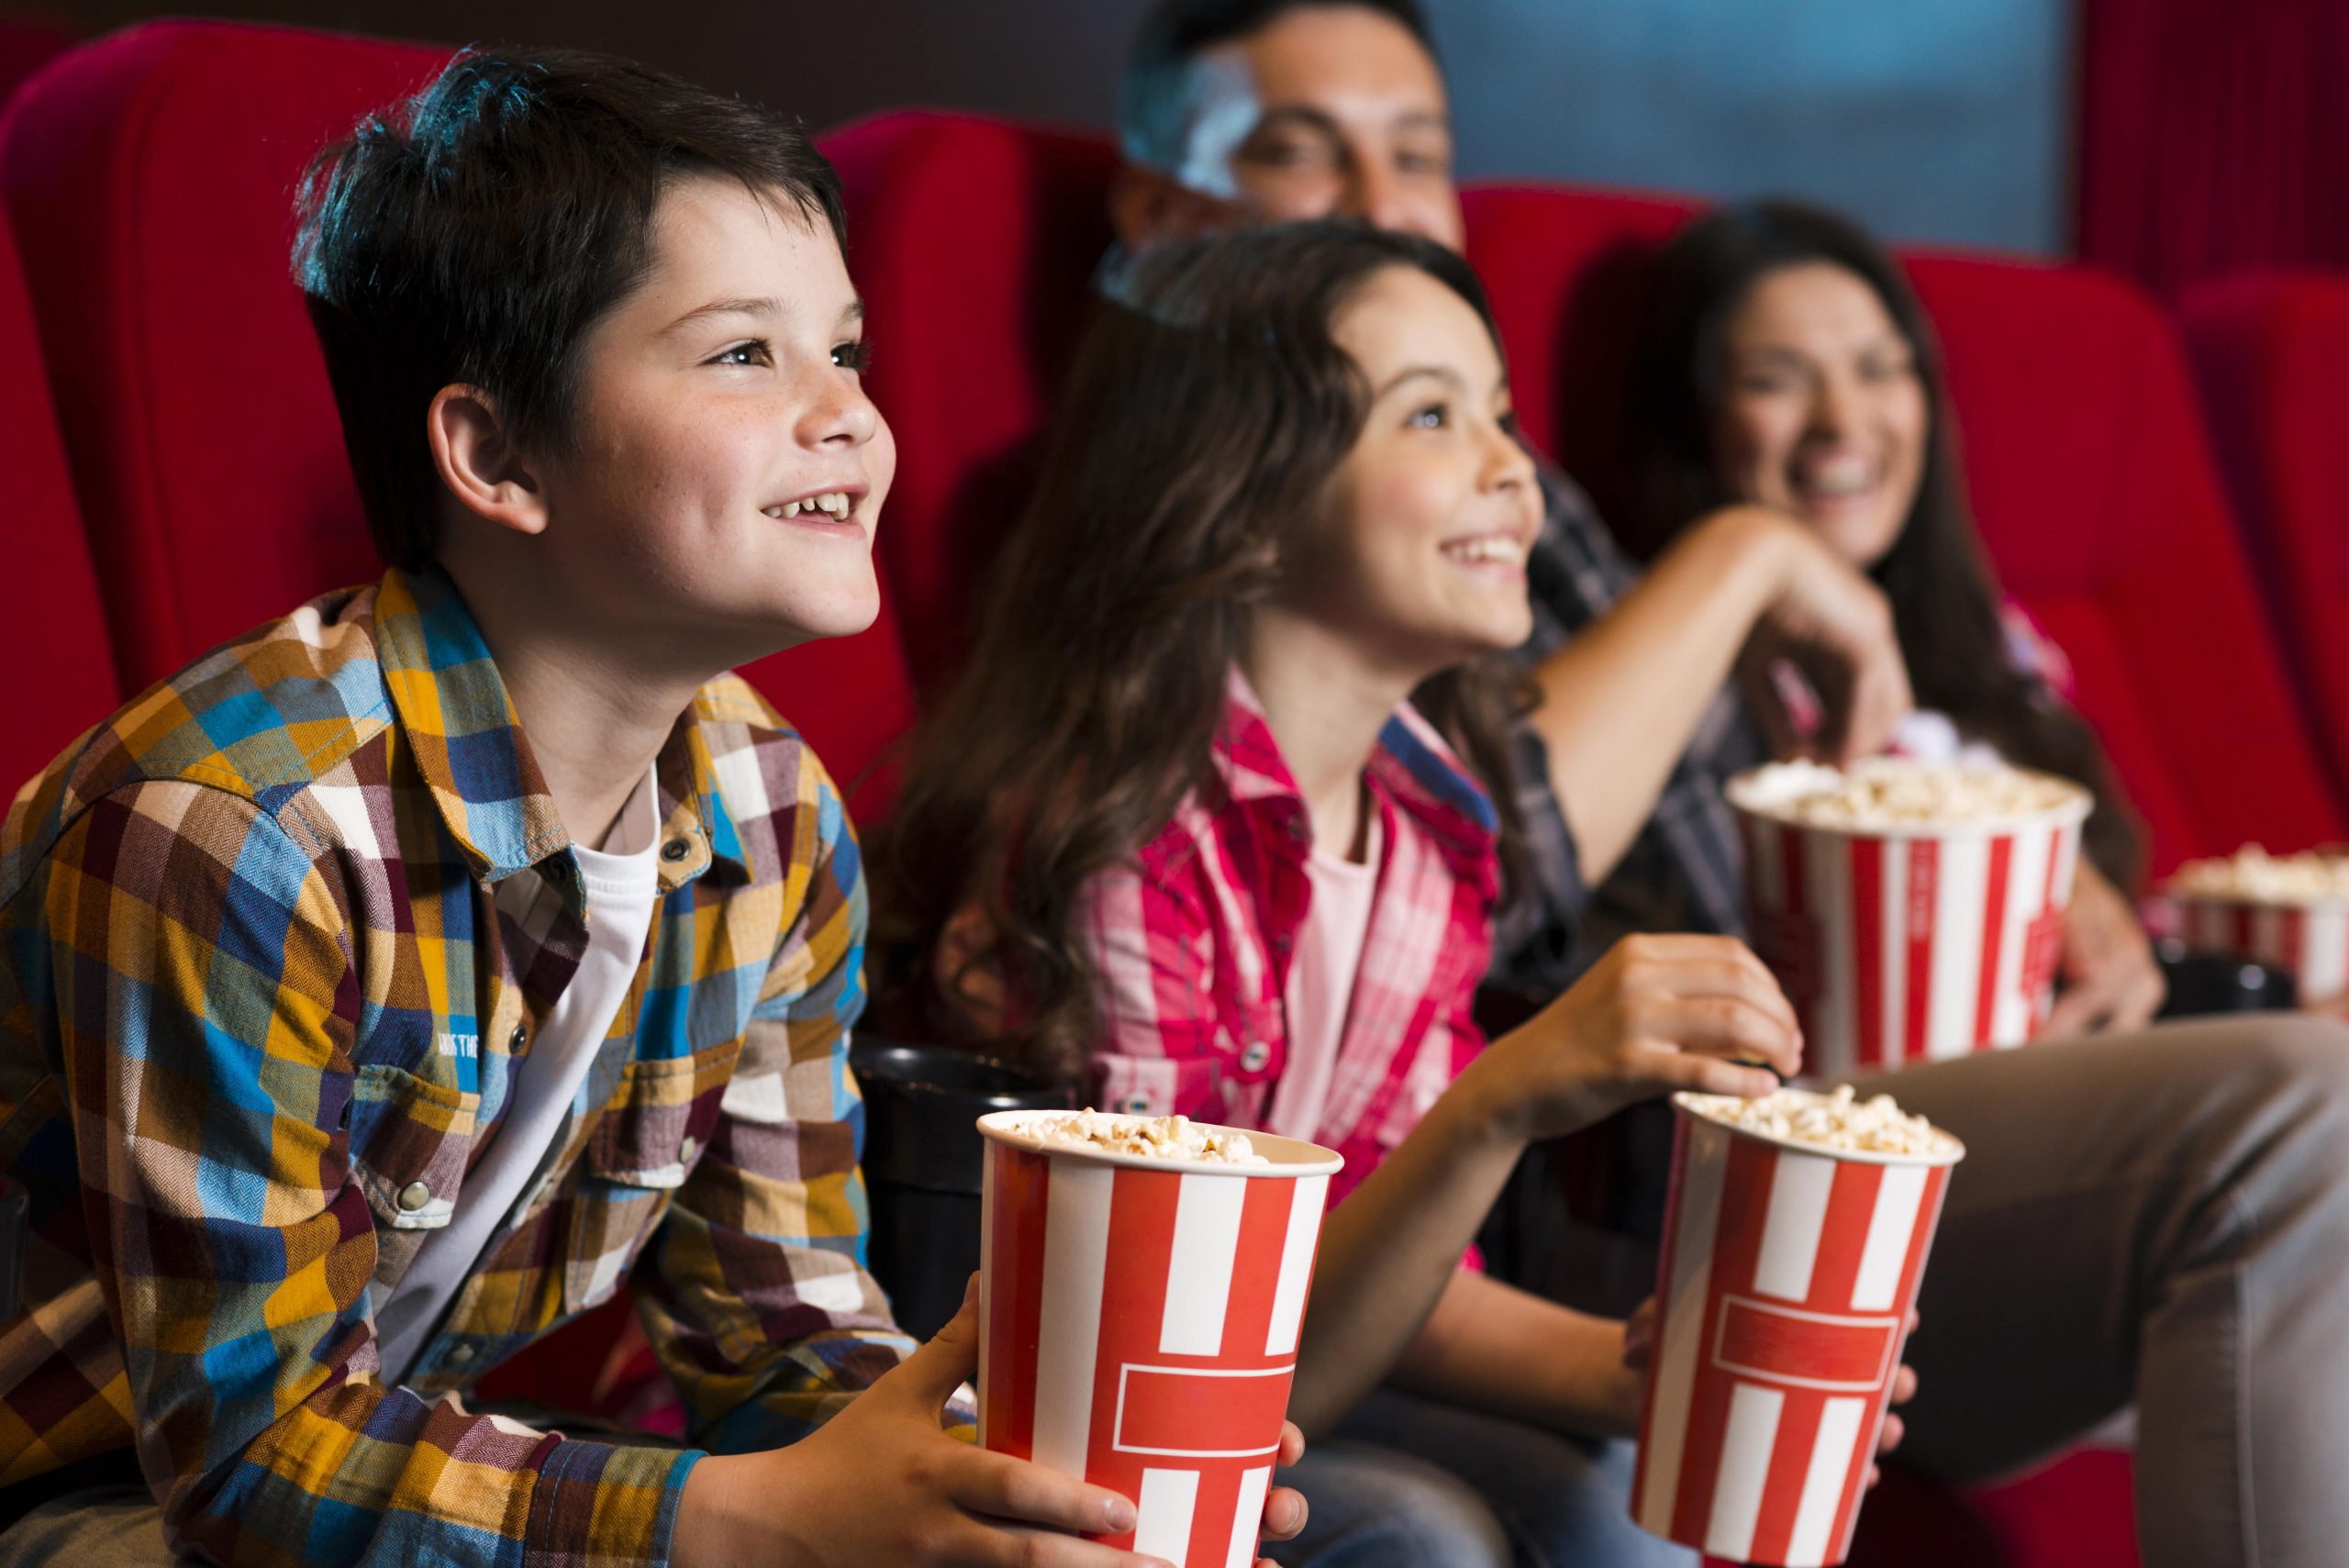 They like watch films. Дети в кинотеатре. Поход в кинотеатр. Дети в кинотеатре с попкорном. Подростки в кинотеатре с попкорном.